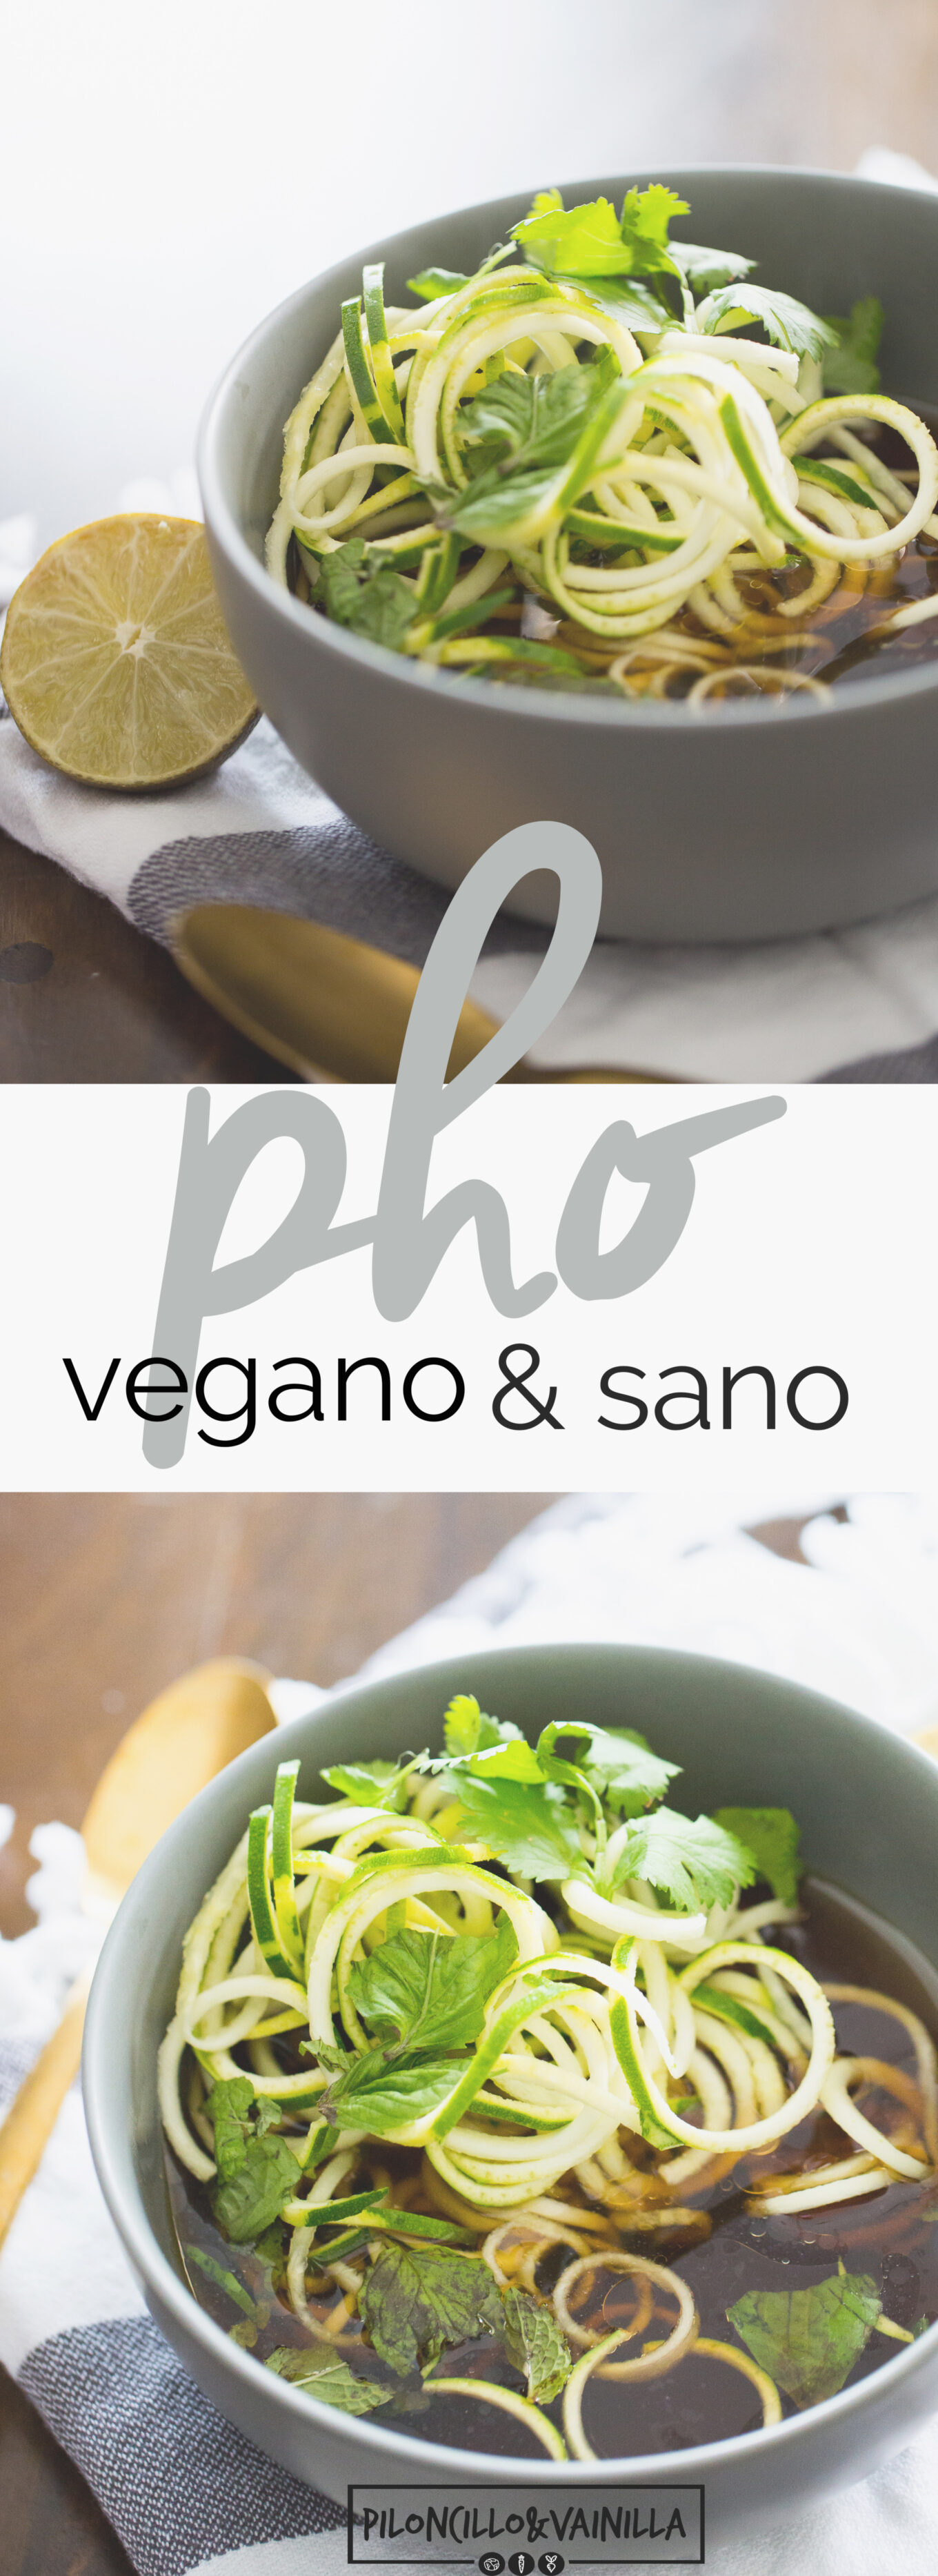 Receta vegana de pho con zucchini noodles, receta sana, receta fácil y deliciosa.